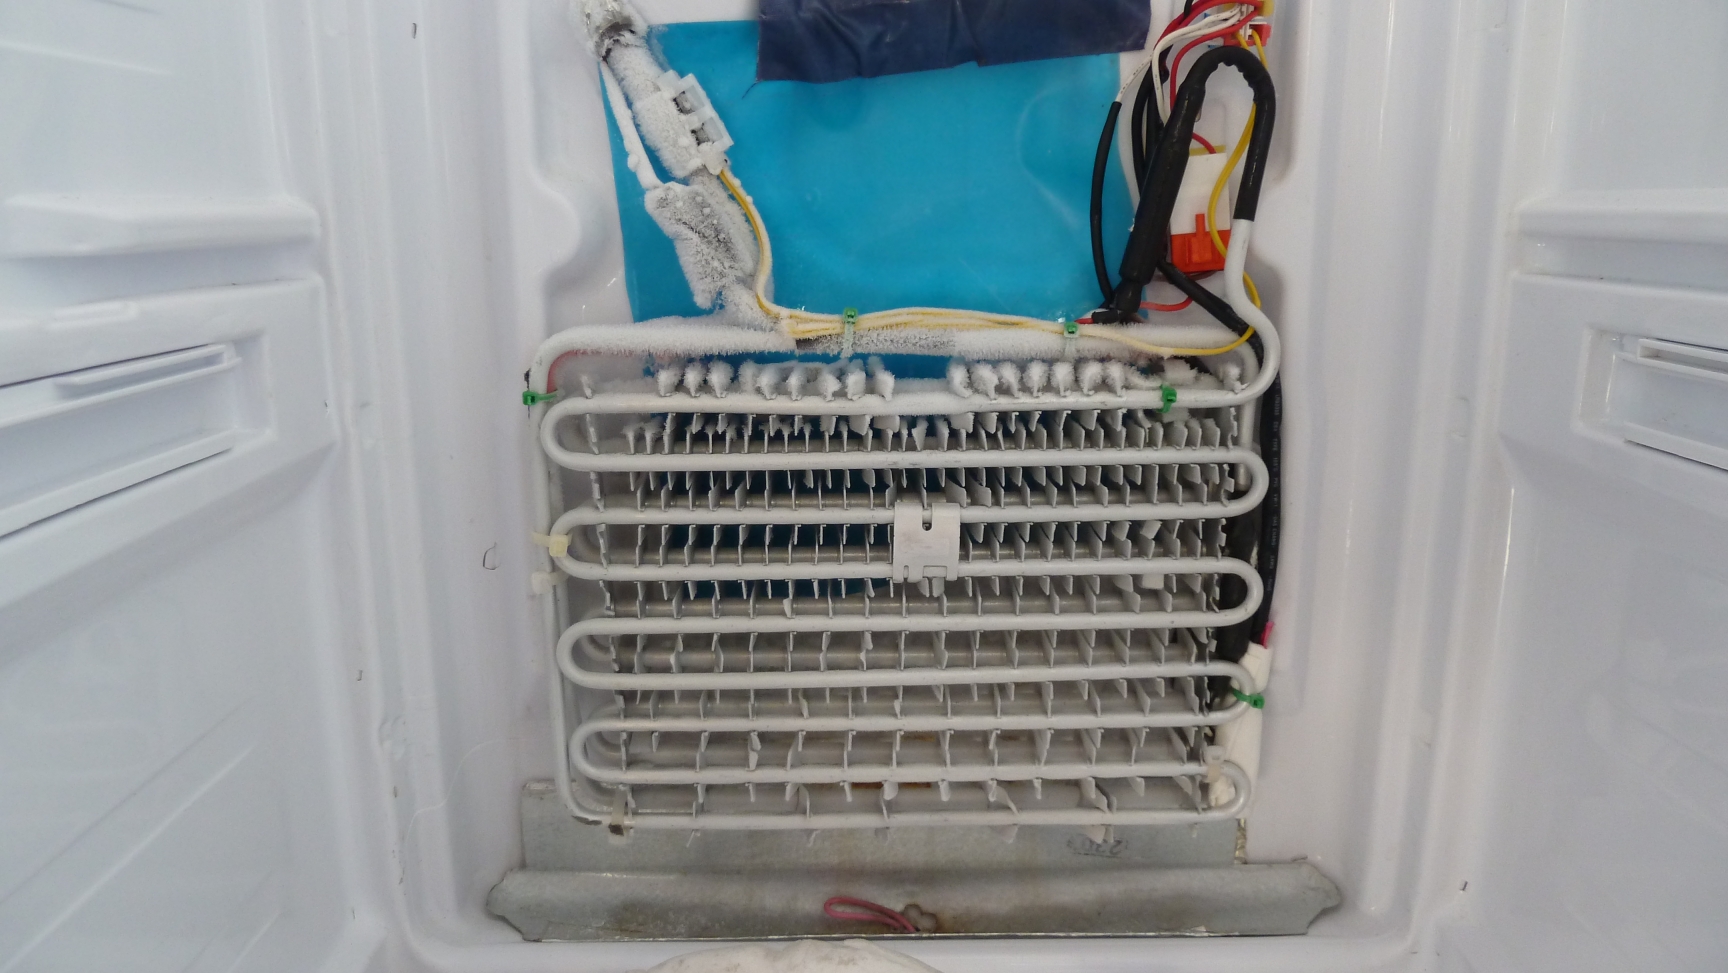 Blanc] Réfrigérateur américain Samsung RS56XDJNS : alarme côté réfrigérateur  ? [résolu]